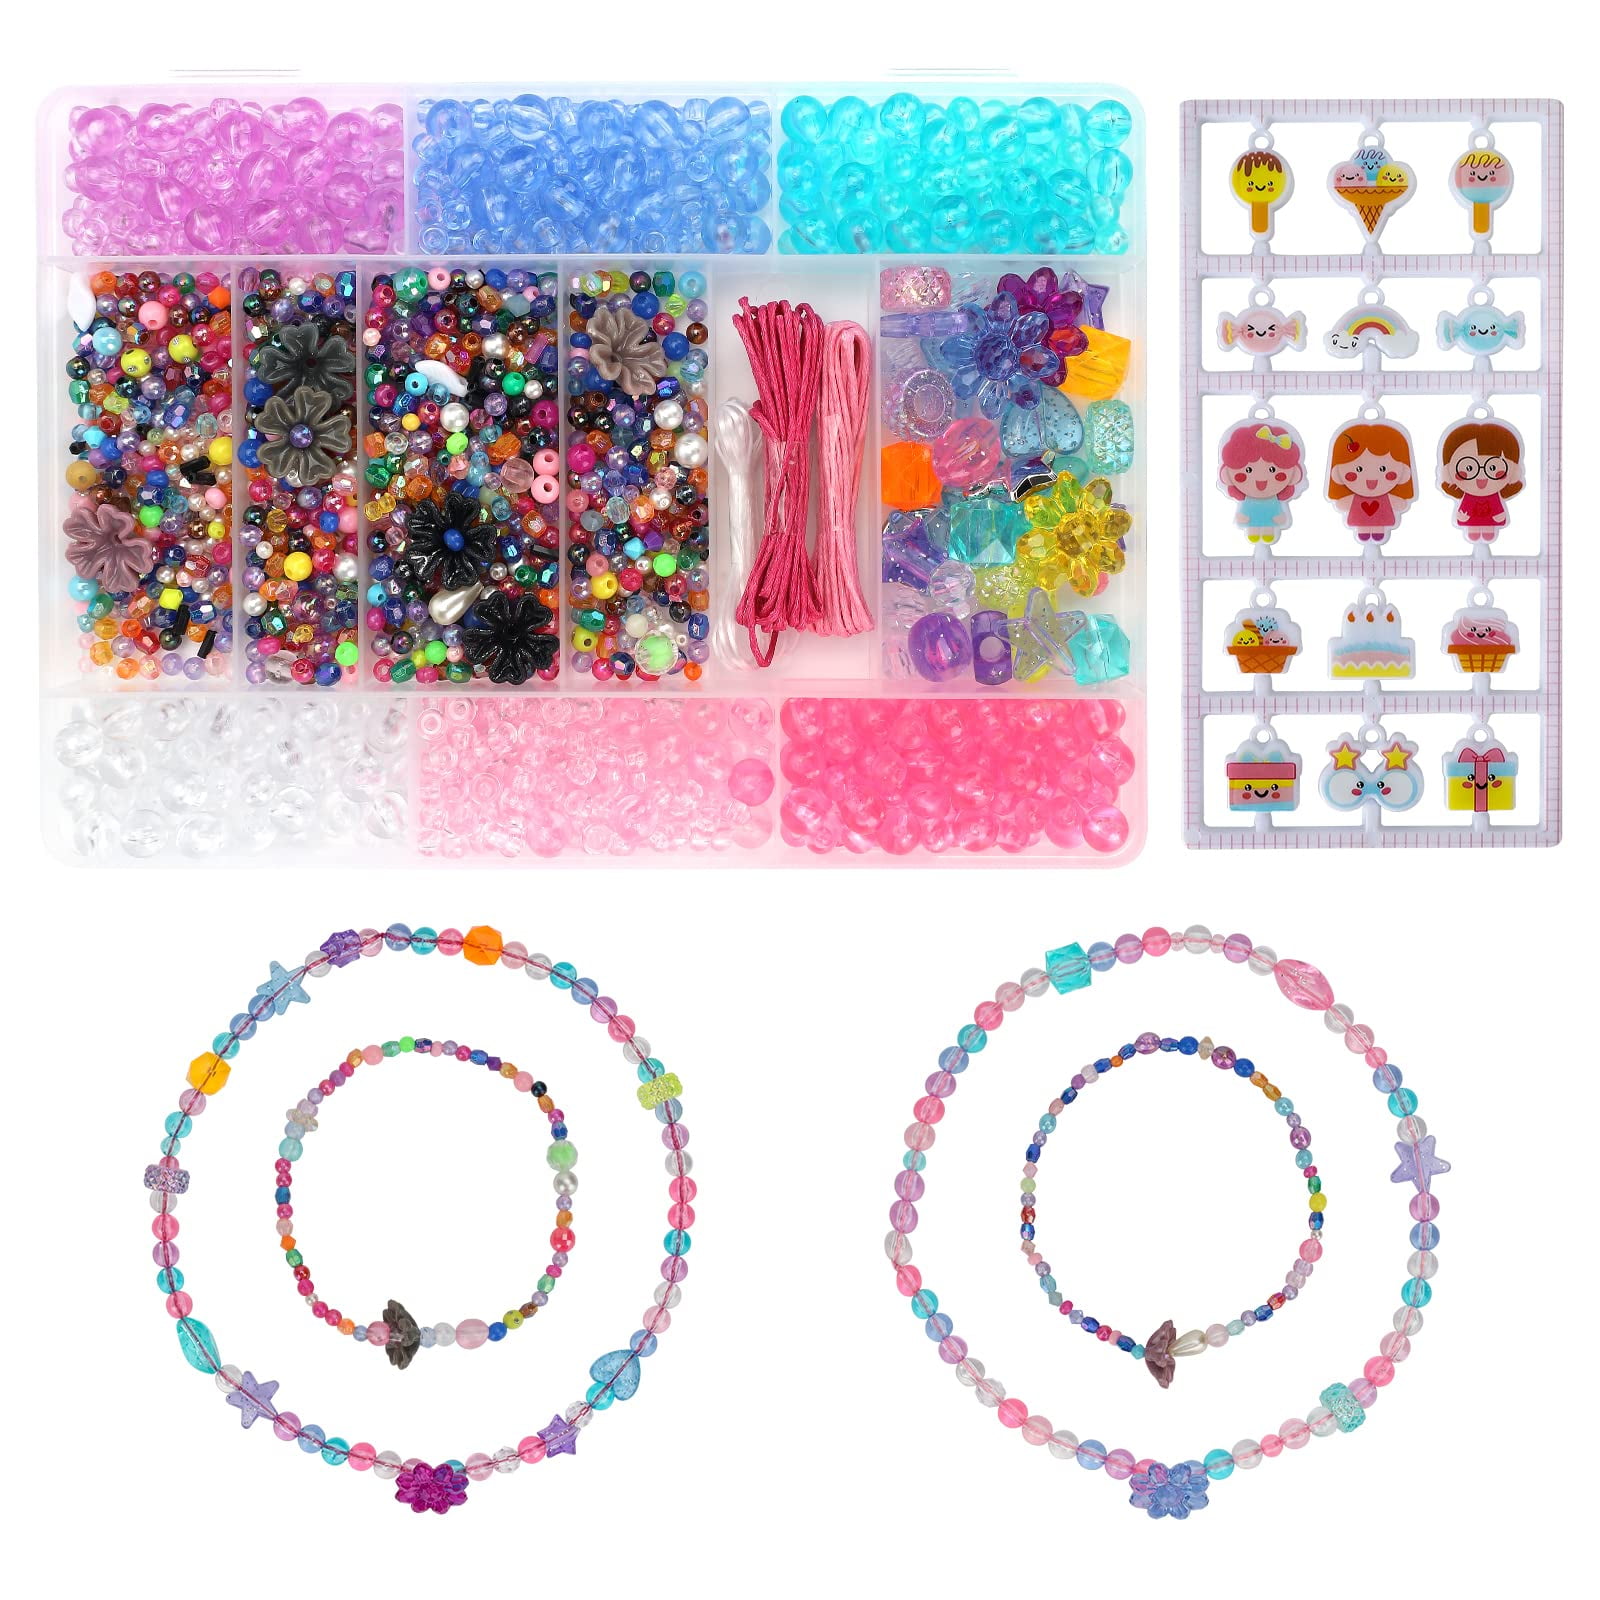 PATPAT Bracelet Making Kit for Girls - Beading & Jewelry Making Kit DIY Kits  for Girls Ages 4-6 Year Old Girls - Bracelet Making Kit for Girls - Beading  & Jewelry Making